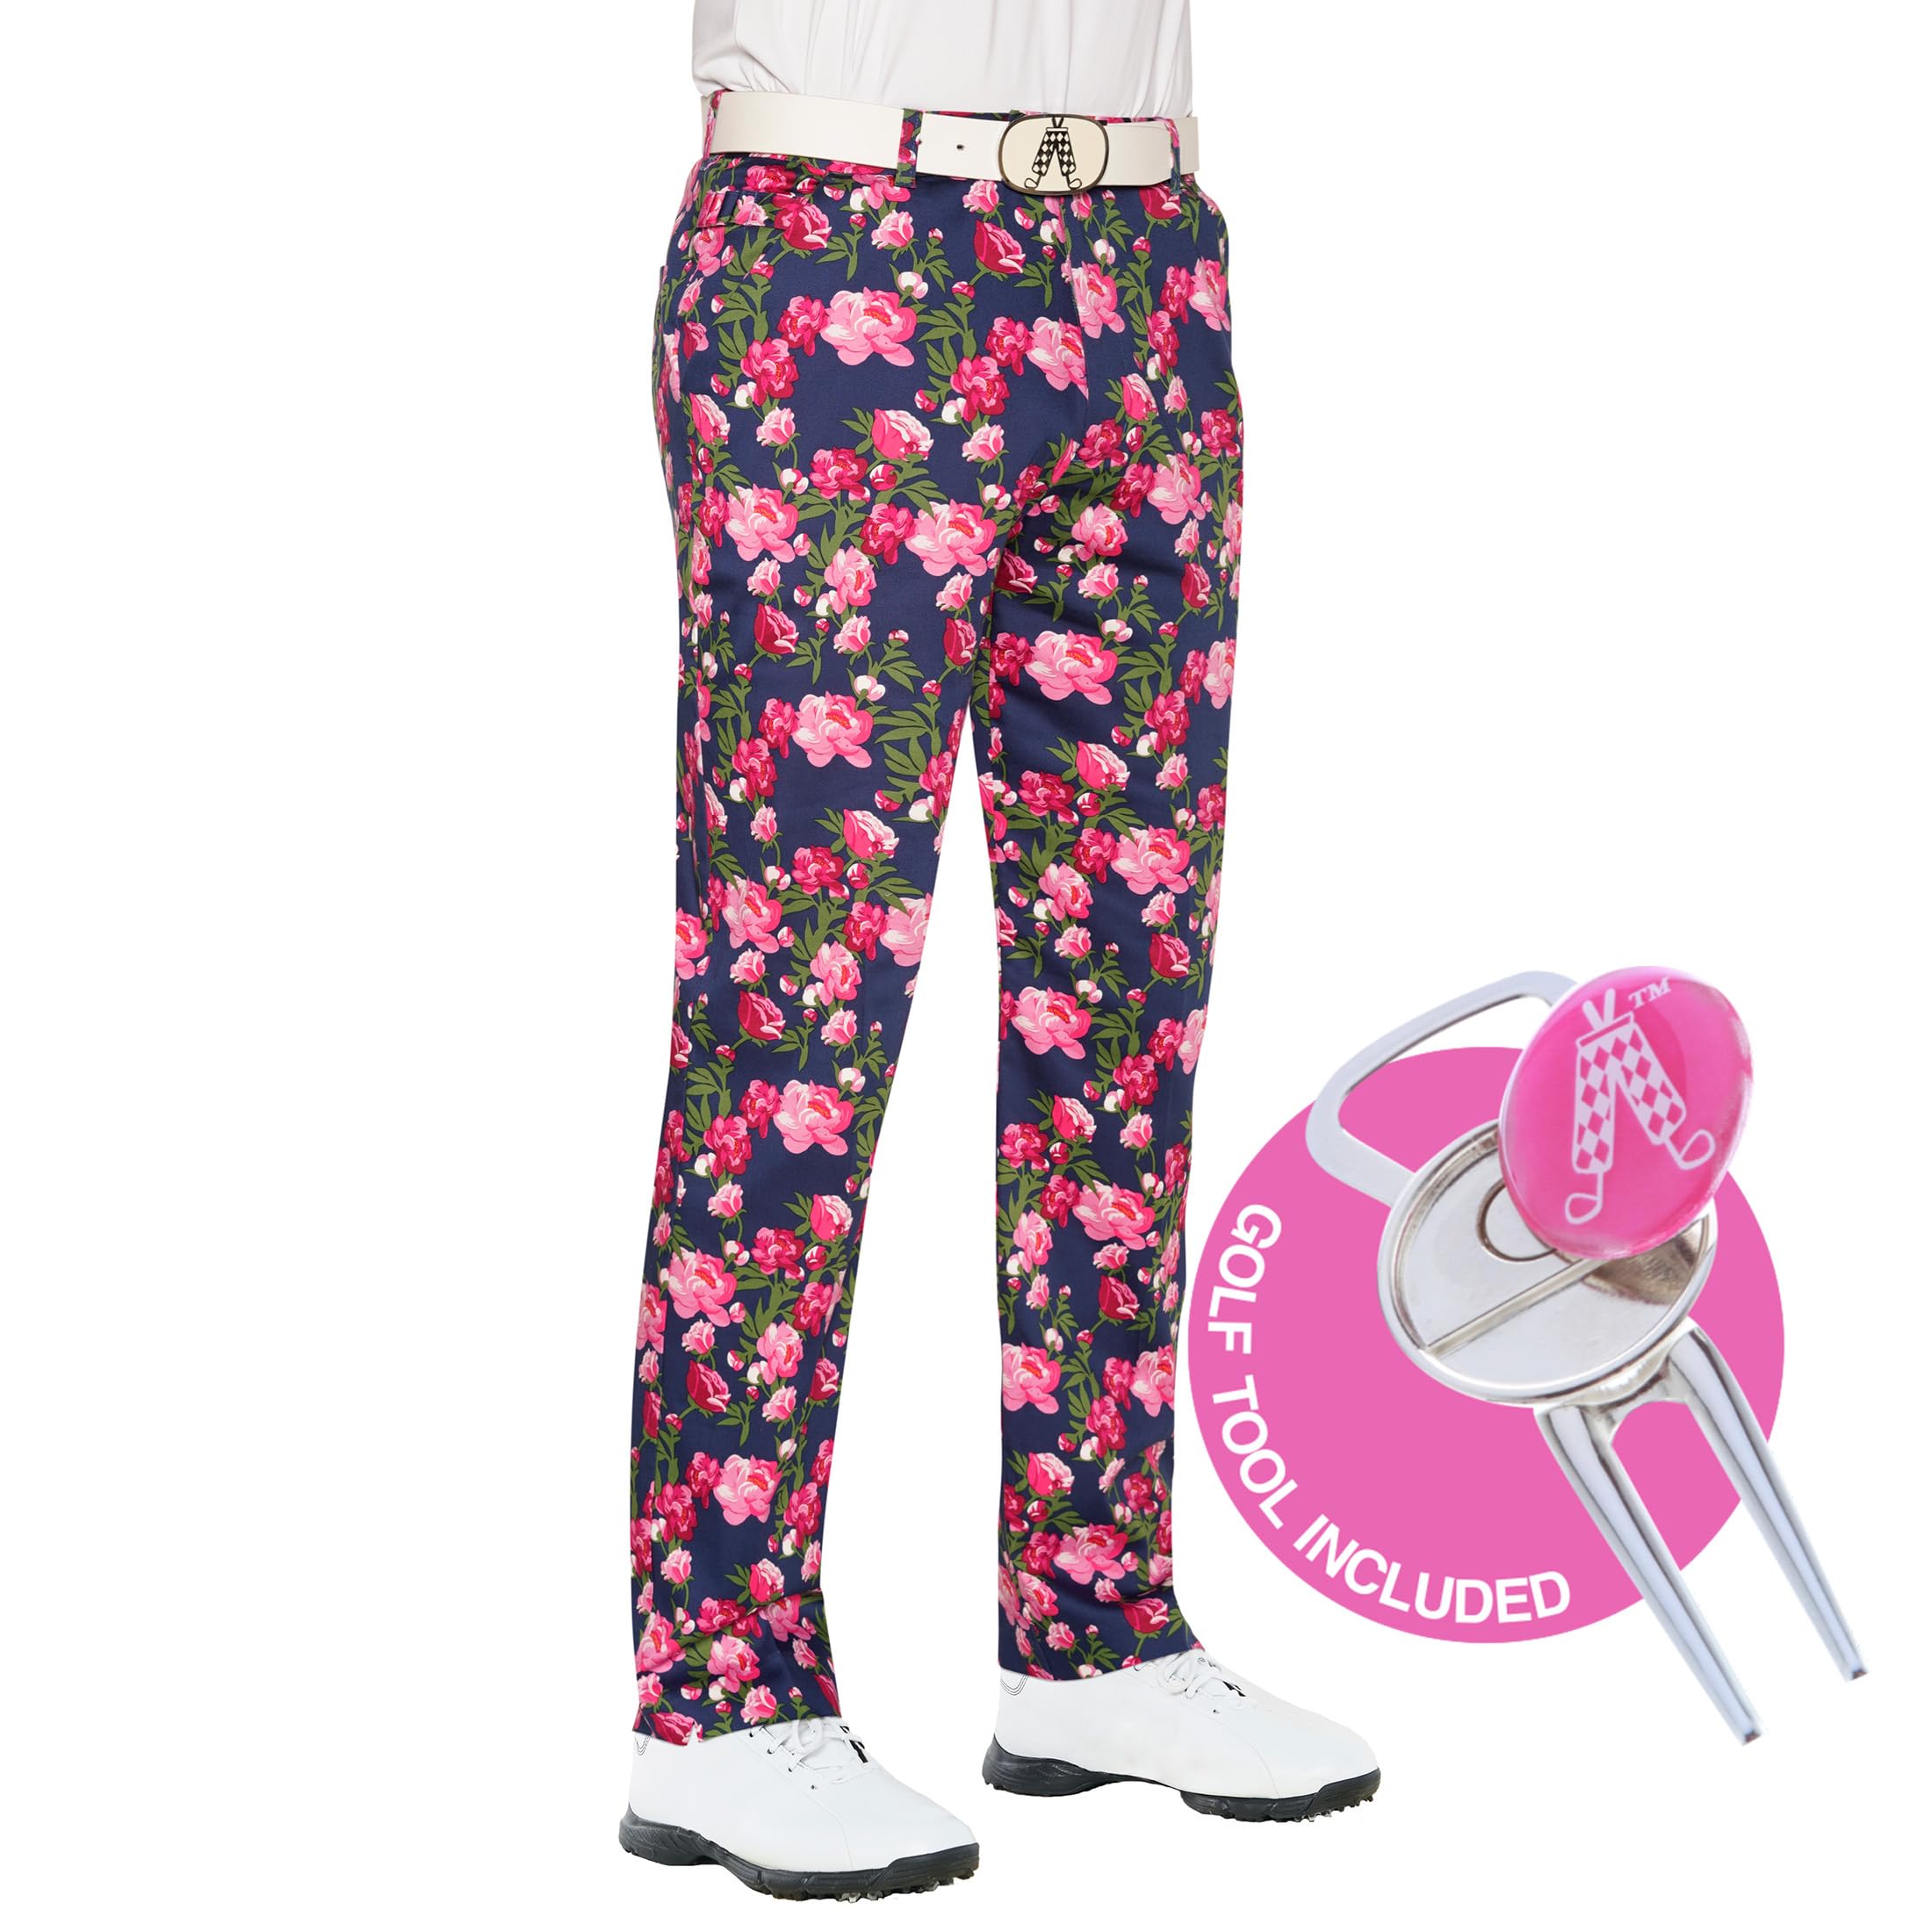 Royal & Awesome Golfhose für Männer, Gemustert, auffällige Herren Golfhose, Bloomers, Bundweite: 91 cm, beinlänge: 76 cm (36 W / 30 L)